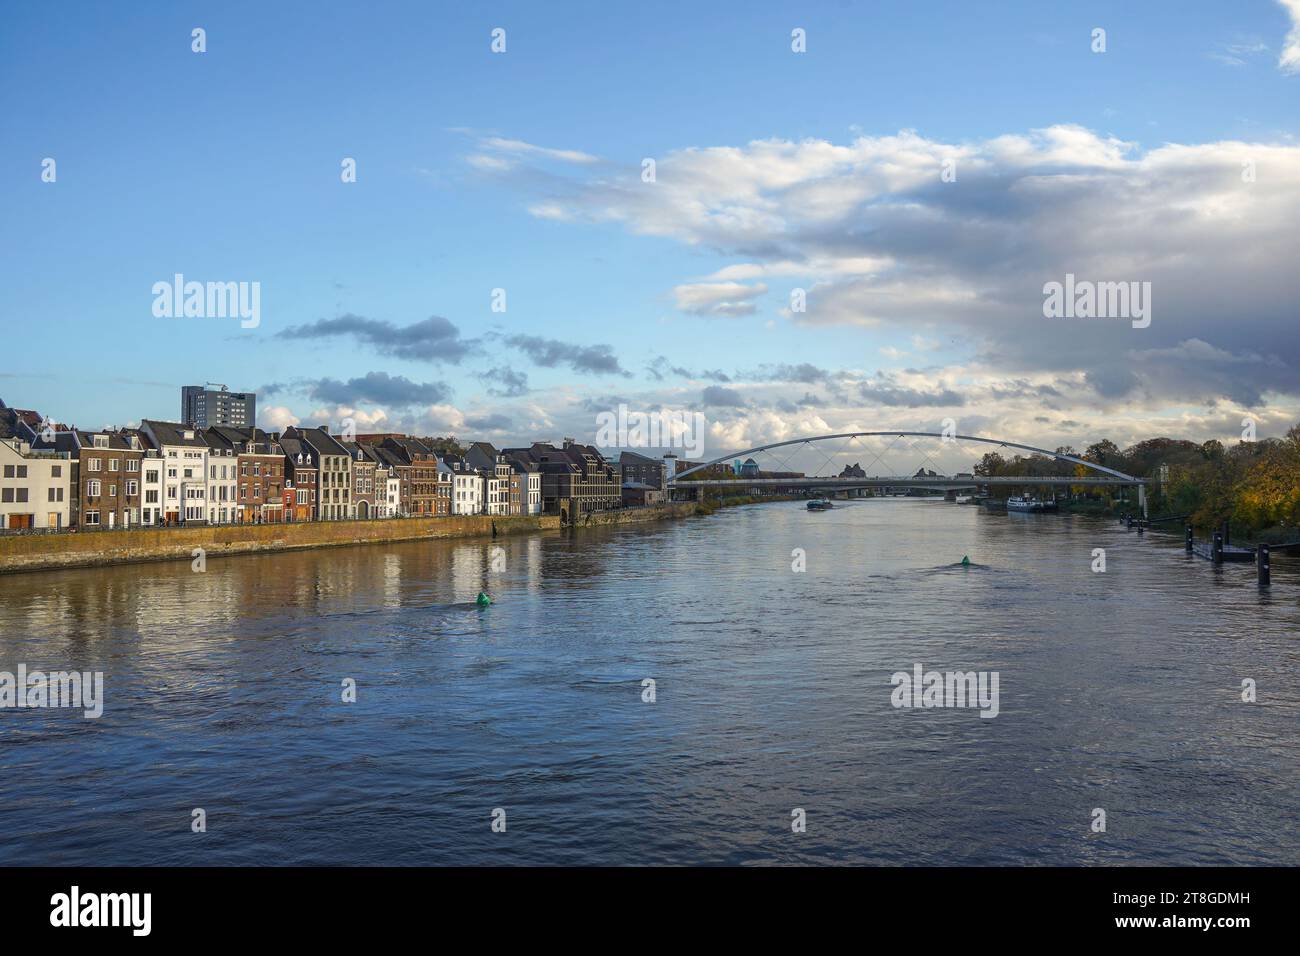 Wijck-Viertel am Fluss maas, de Maas, mit Kennedy-Brücke, Maastricht, Limburg, Niederlande. Stockfoto